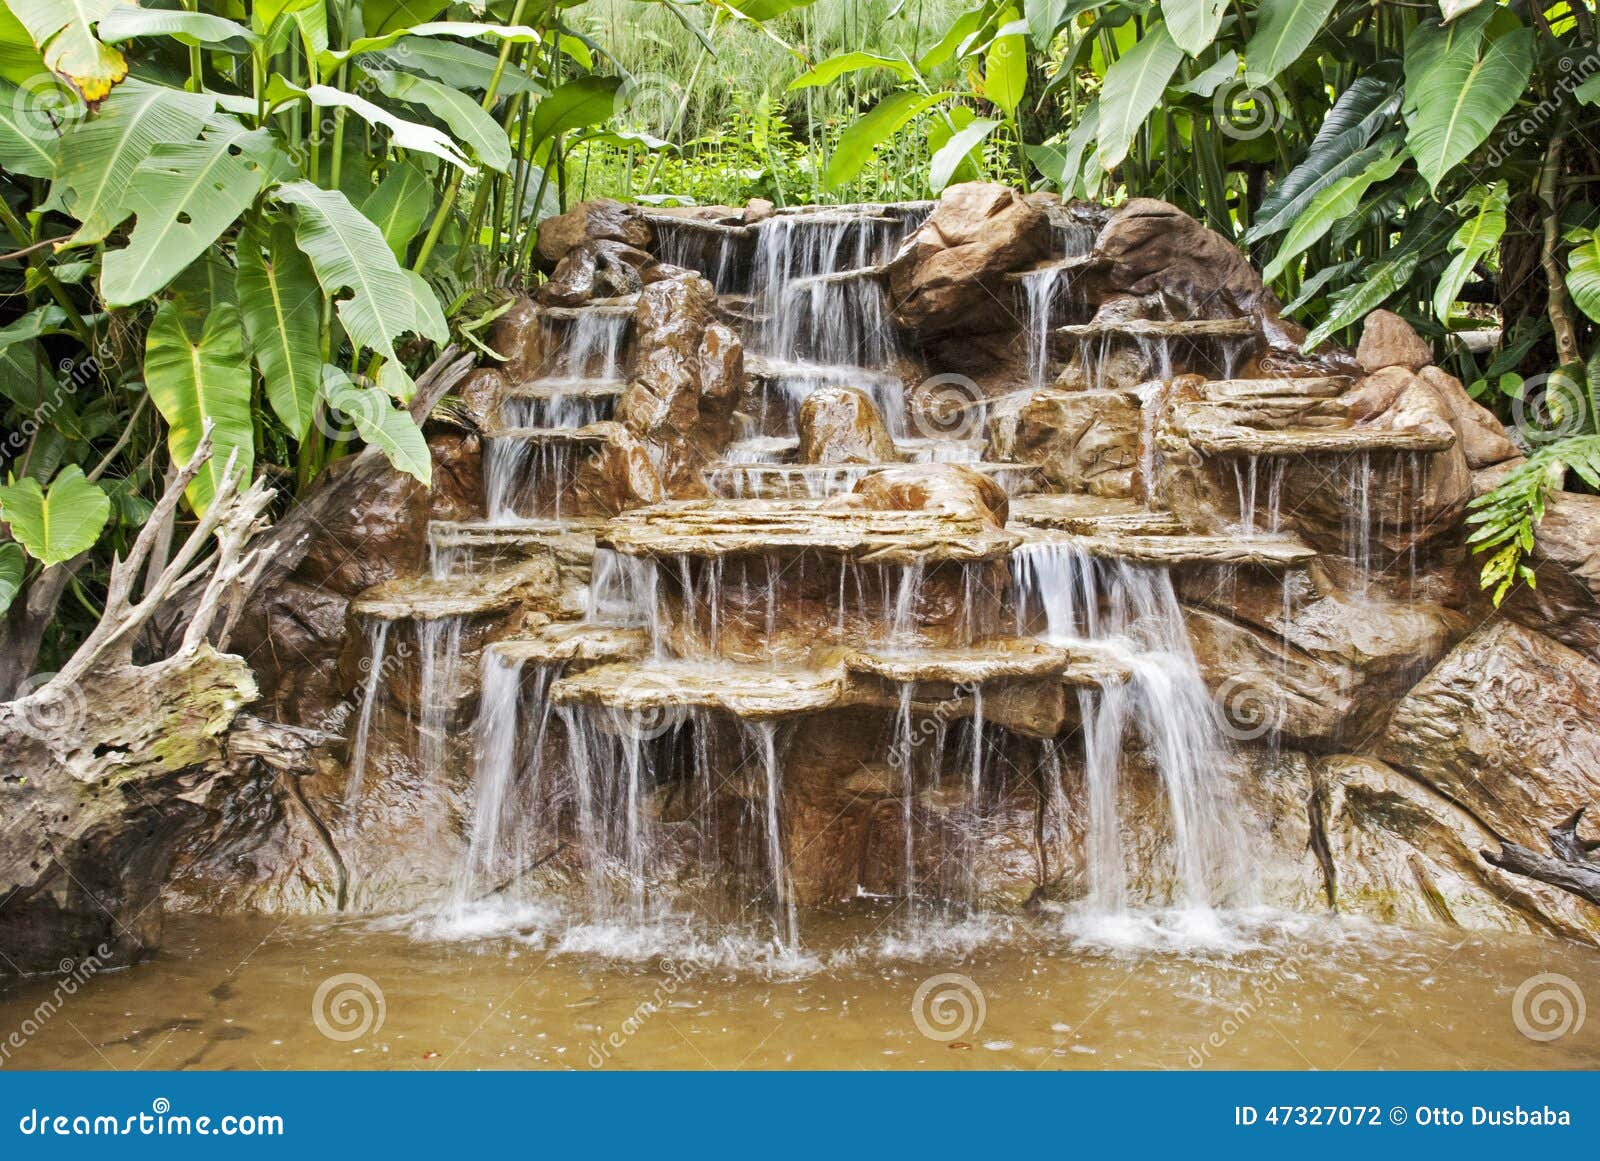 Vattenfall i en Costa Rica rainforest. Applådera vattenfallet i en Costa Rica rainforest, La Paz Waterfall Gardens